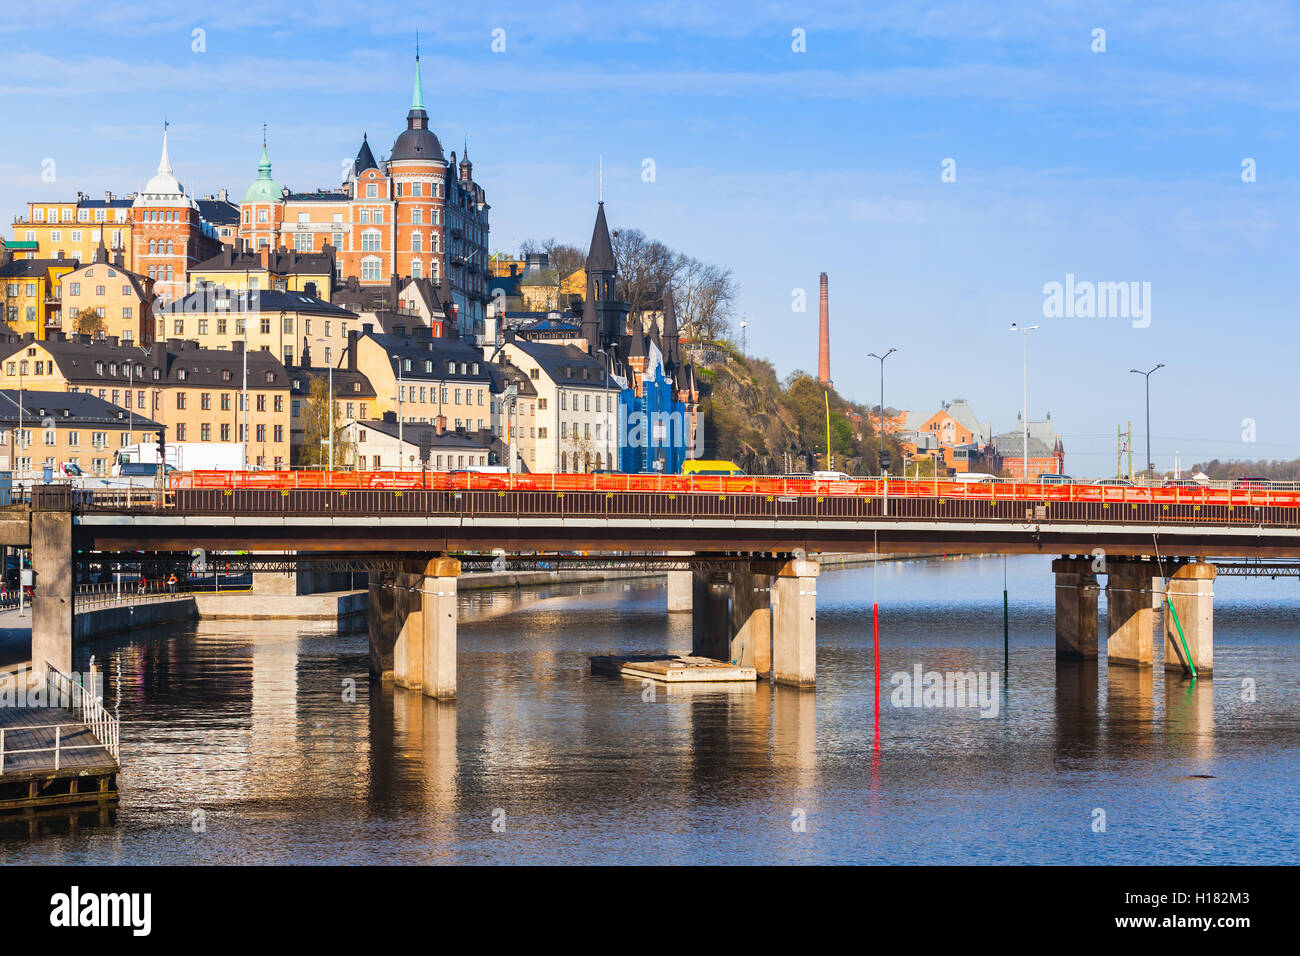 Stadtbild von Sodermalm Stadtteil im alten Zentrum von Stockholm, Schweden Stockfoto